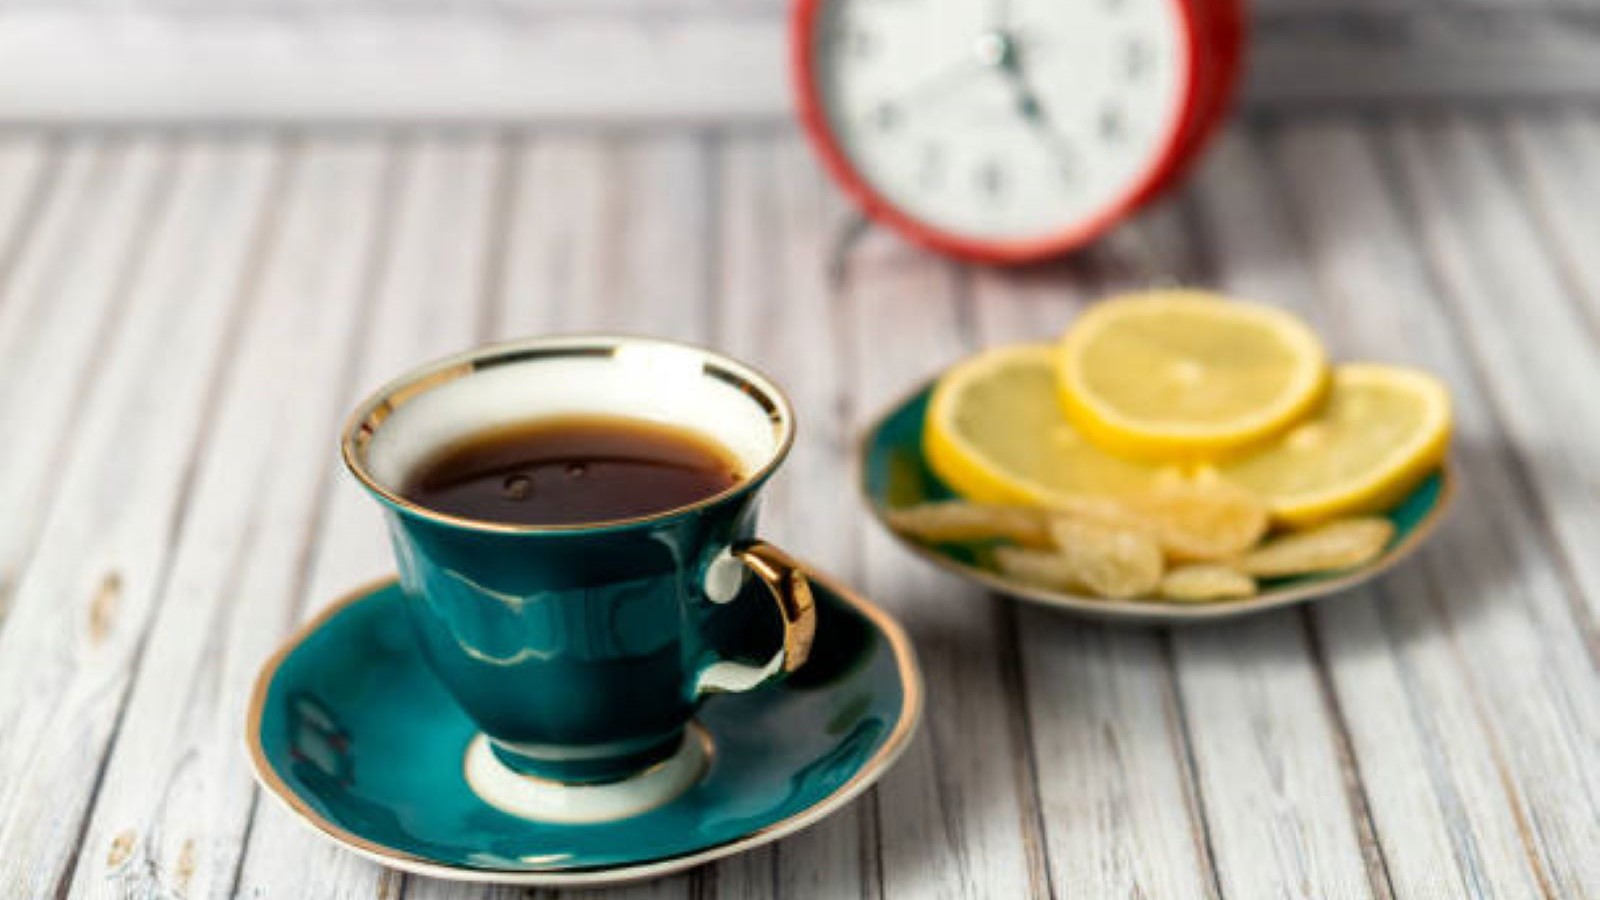 Limonlu Türk kahvesi tarifi nasıl yapılır? Faydaları nelerdir?